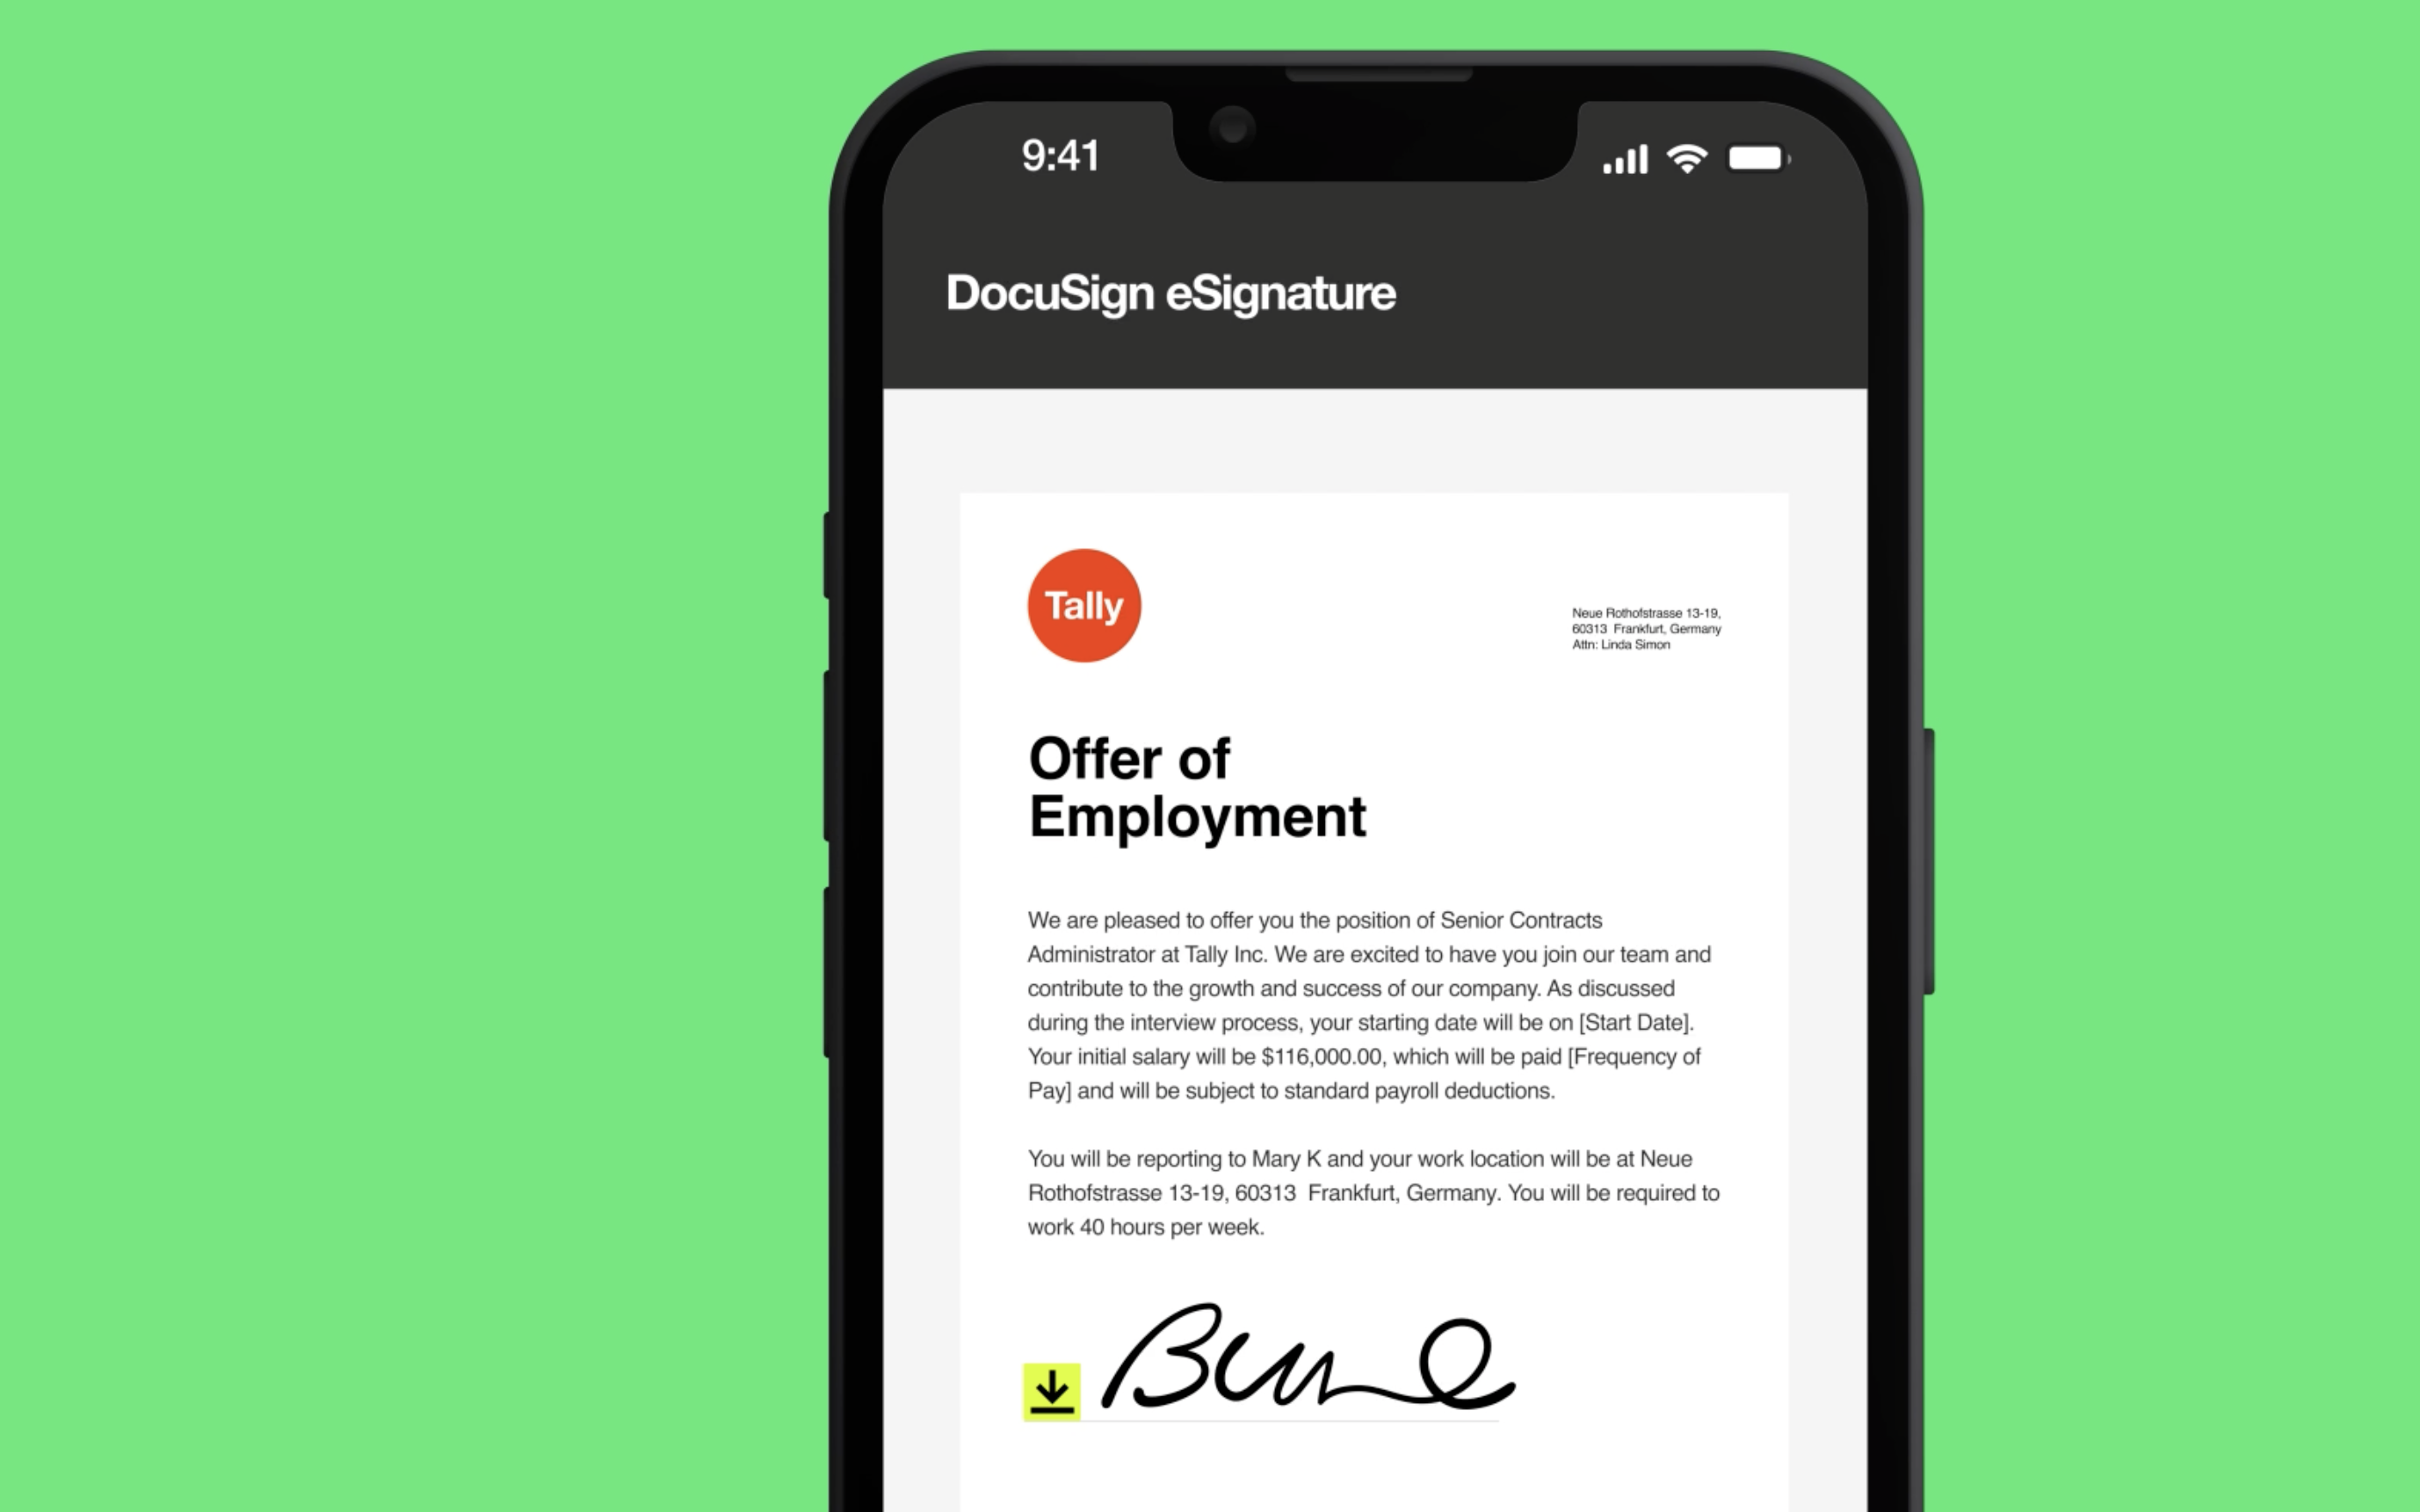 WhatsApp Delivery gracias a alianza con DocuSign, permite agilizar firma de documentos